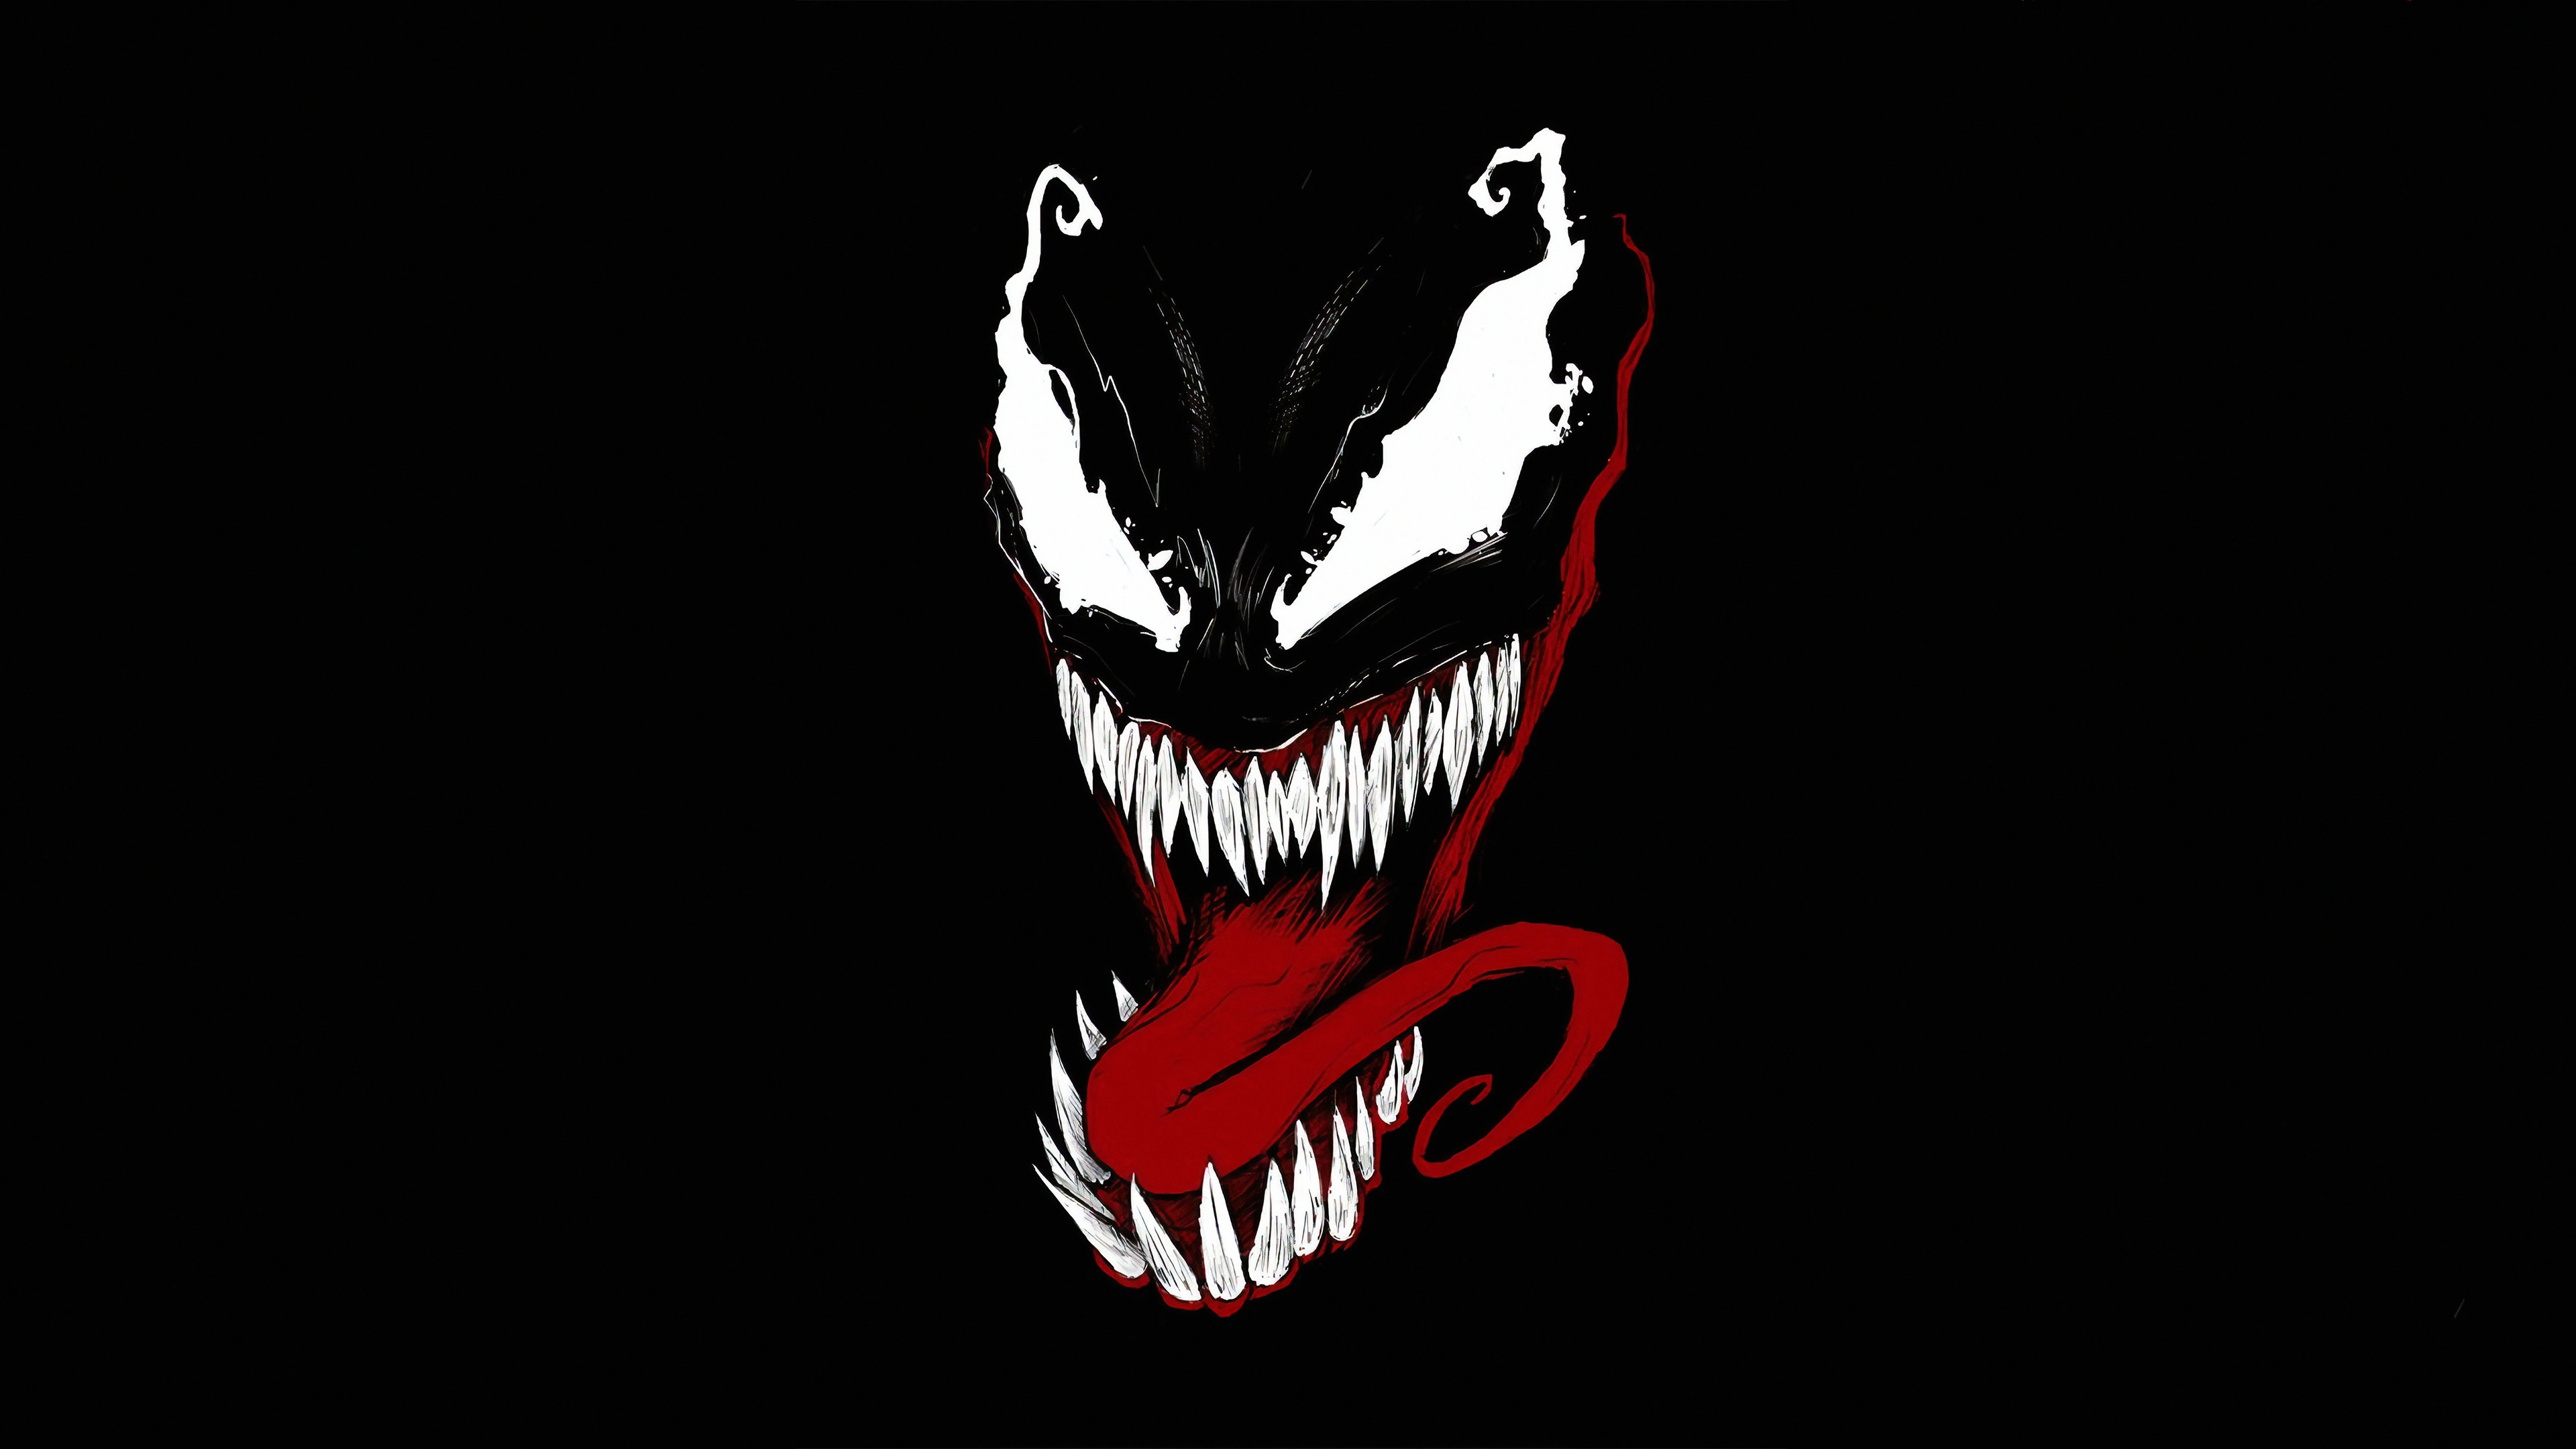 venom devil 1570918661 - Venom Devil - Venom wallpapers, superheroes wallpapers, hd-wallpapers, digital art wallpapers, artwork wallpapers, 4k-wallpapers